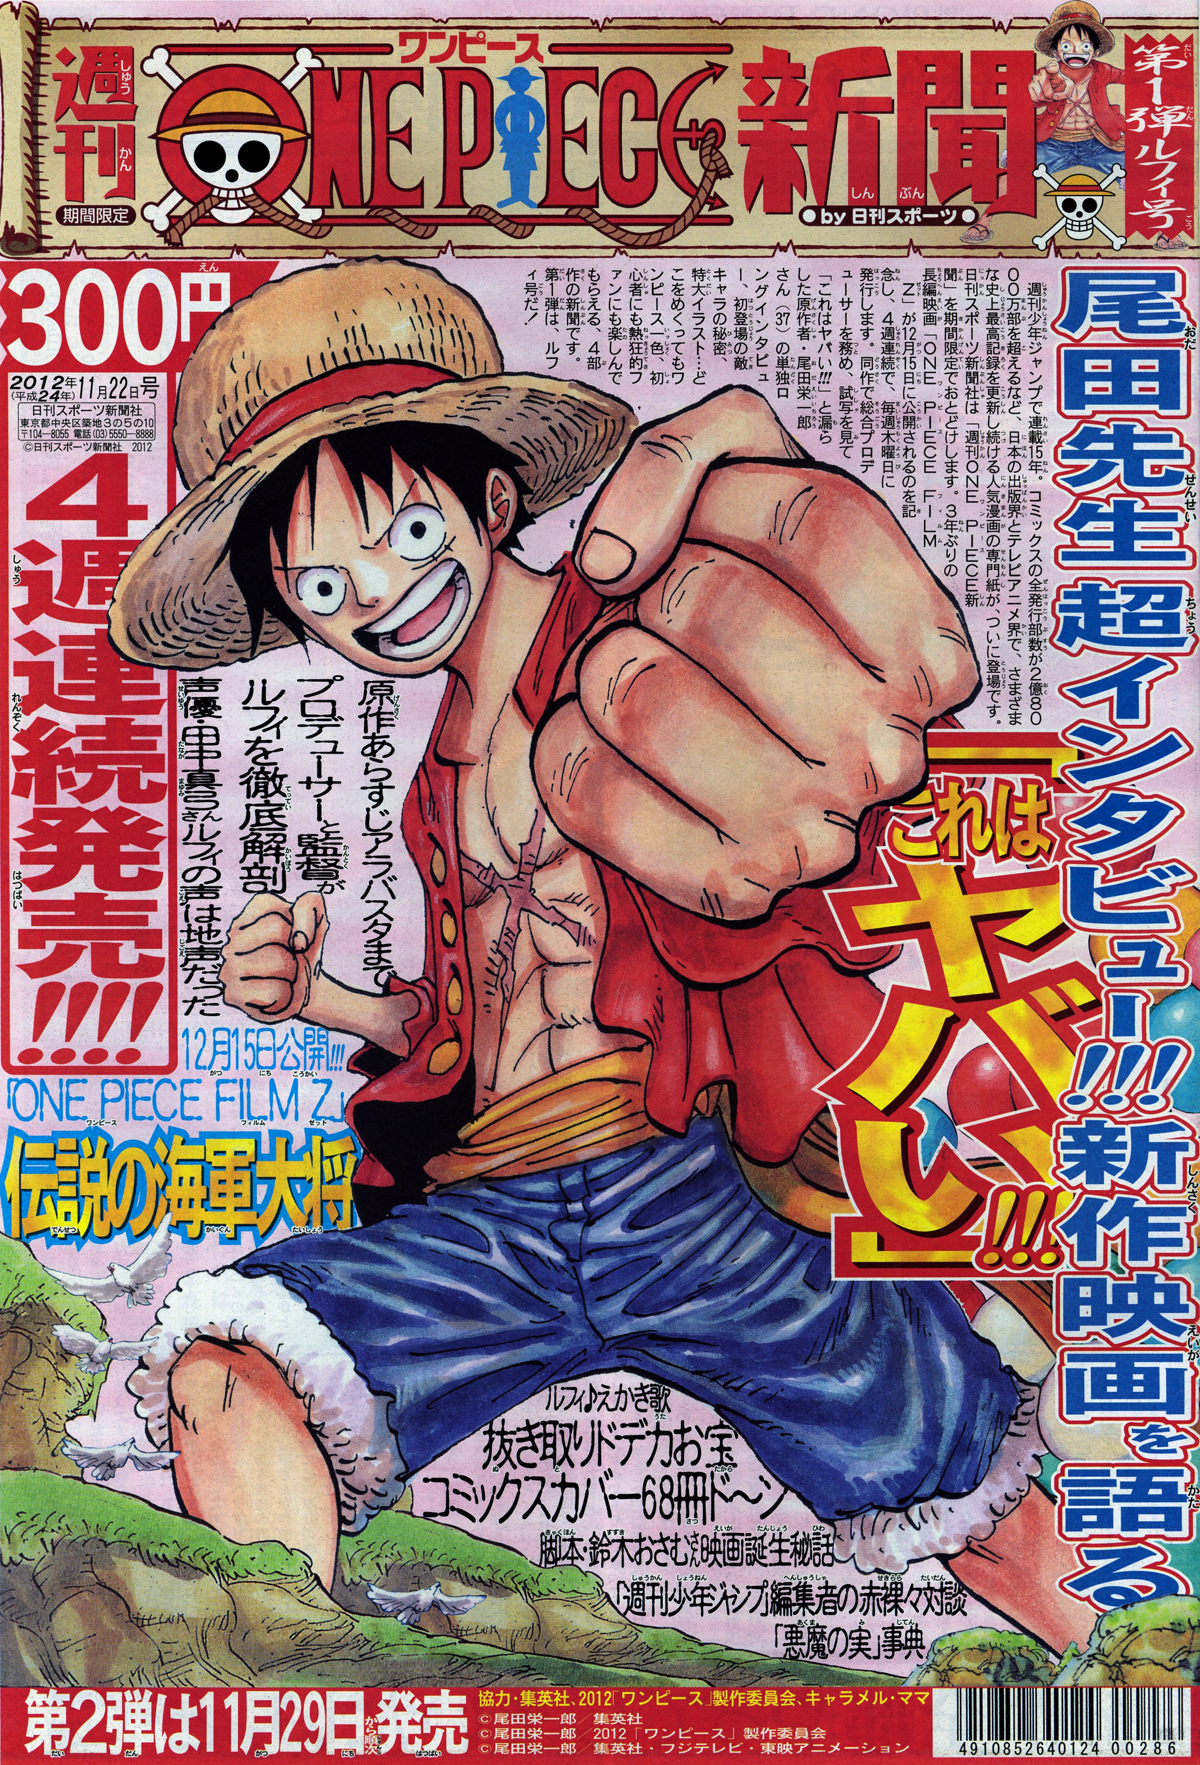 One Piece Newspaper One Piece Wiki Fandom